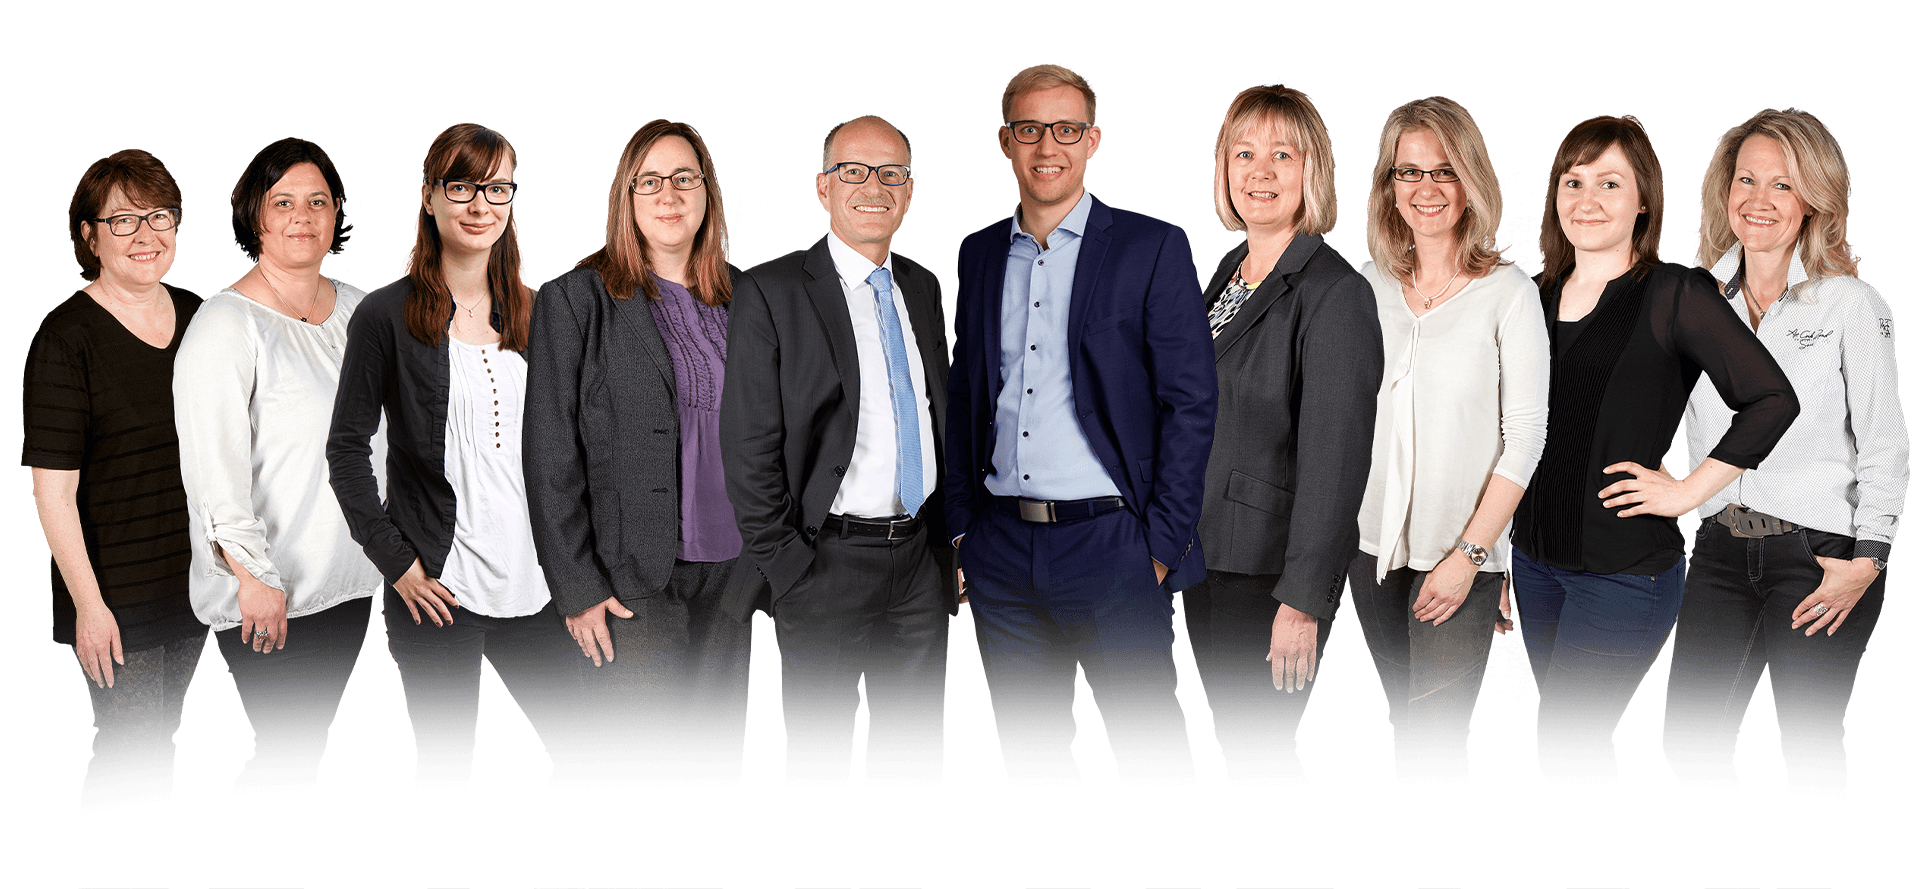 Das Team der Kanzlei Alius aus Ravensburg ist Ihr kompetenter Partner für Steuerberatung & Wirtschaftsprüfung.